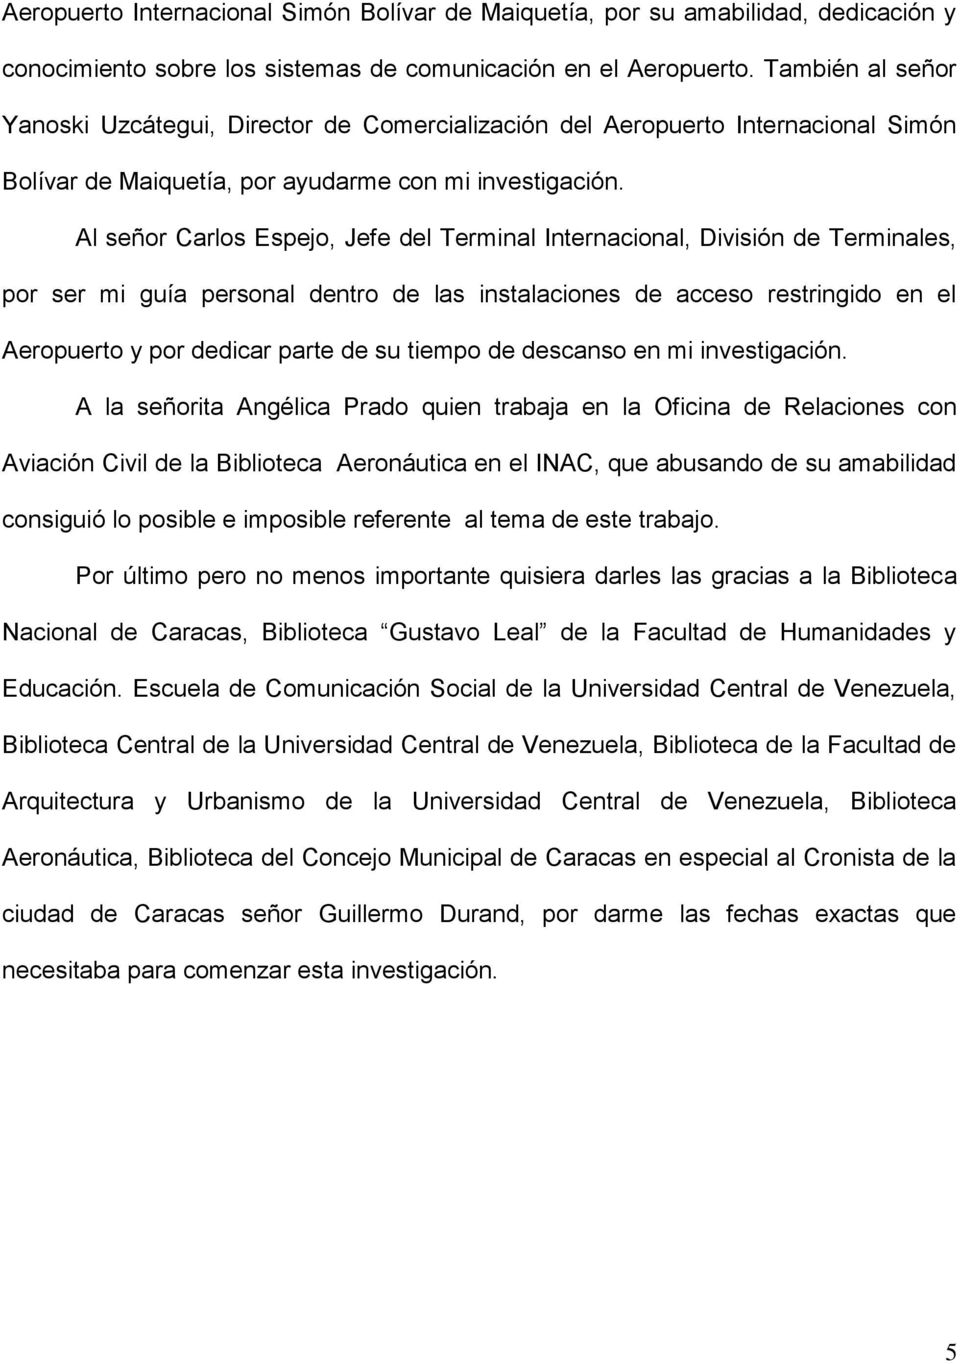 Al señor Carlos Espejo, Jefe del Terminal Internacional, División de Terminales, por ser mi guía personal dentro de las instalaciones de acceso restringido en el Aeropuerto y por dedicar parte de su